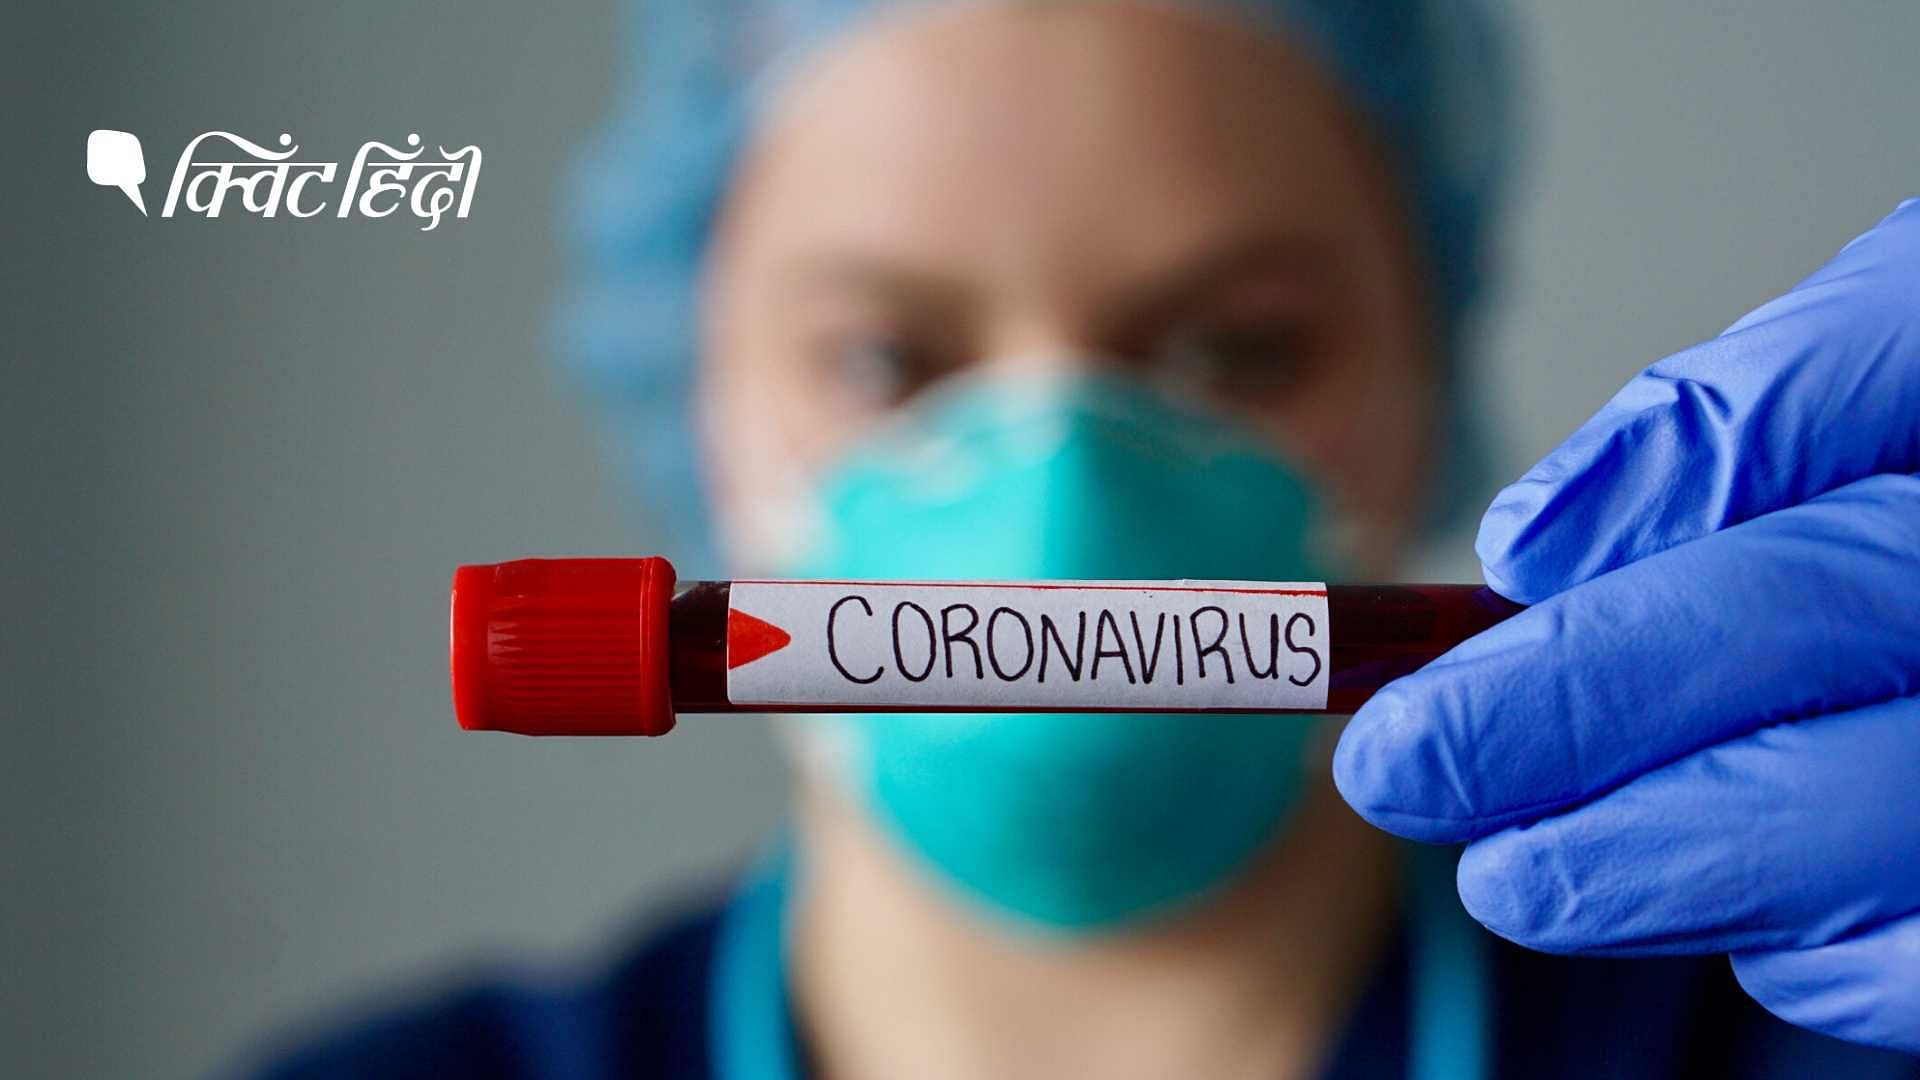 दुनियाभर में तीन लाख से ज्यादा लोगों के कोरोनावायरस से संक्रमित होने की पुष्टि हुई है